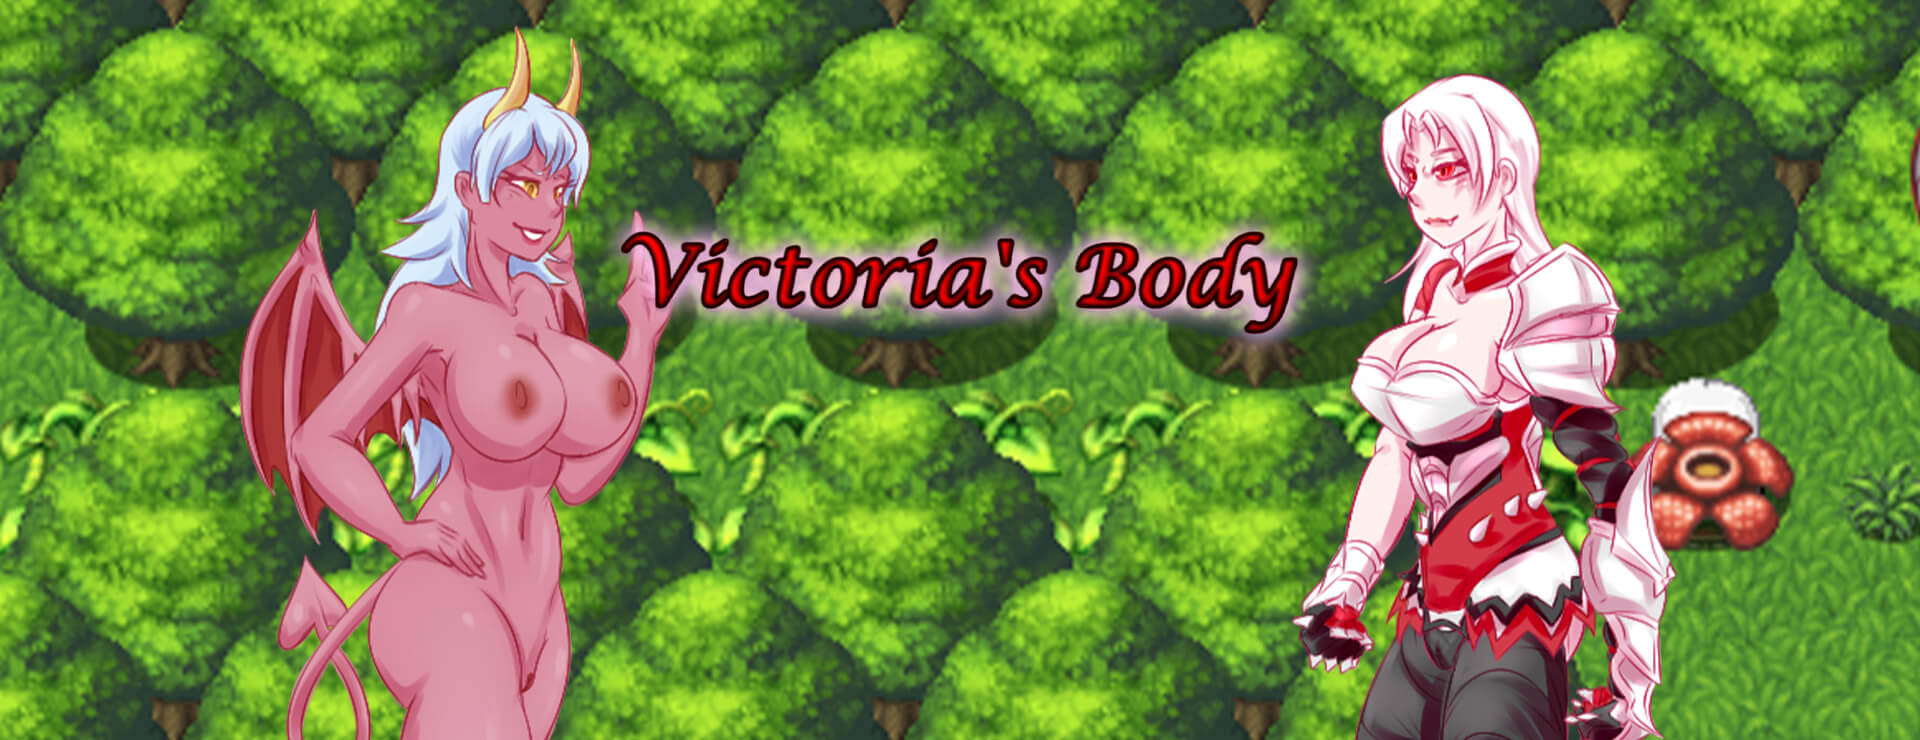 Victoria's Body - RPG Jeu